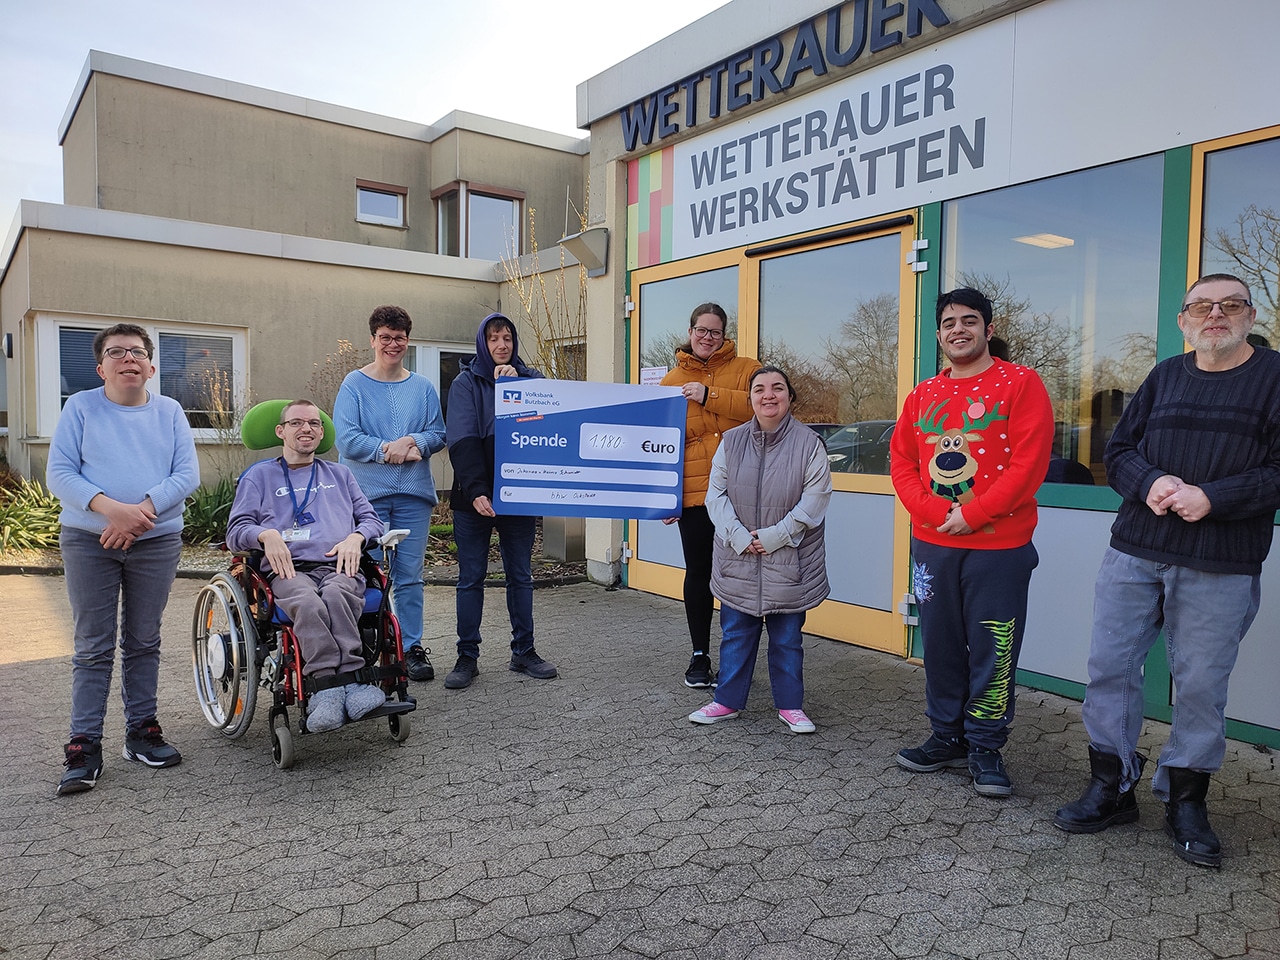 7 Personen stehen vor dem Eingang der Wetterauer Werkstätten. Ein Mann sitzt im Rollstuhl. Zwei Personen halten ein blaues Schild, auf dem steht: Spende 1180 Euro. Alle schauen in die Kamera und lachen.